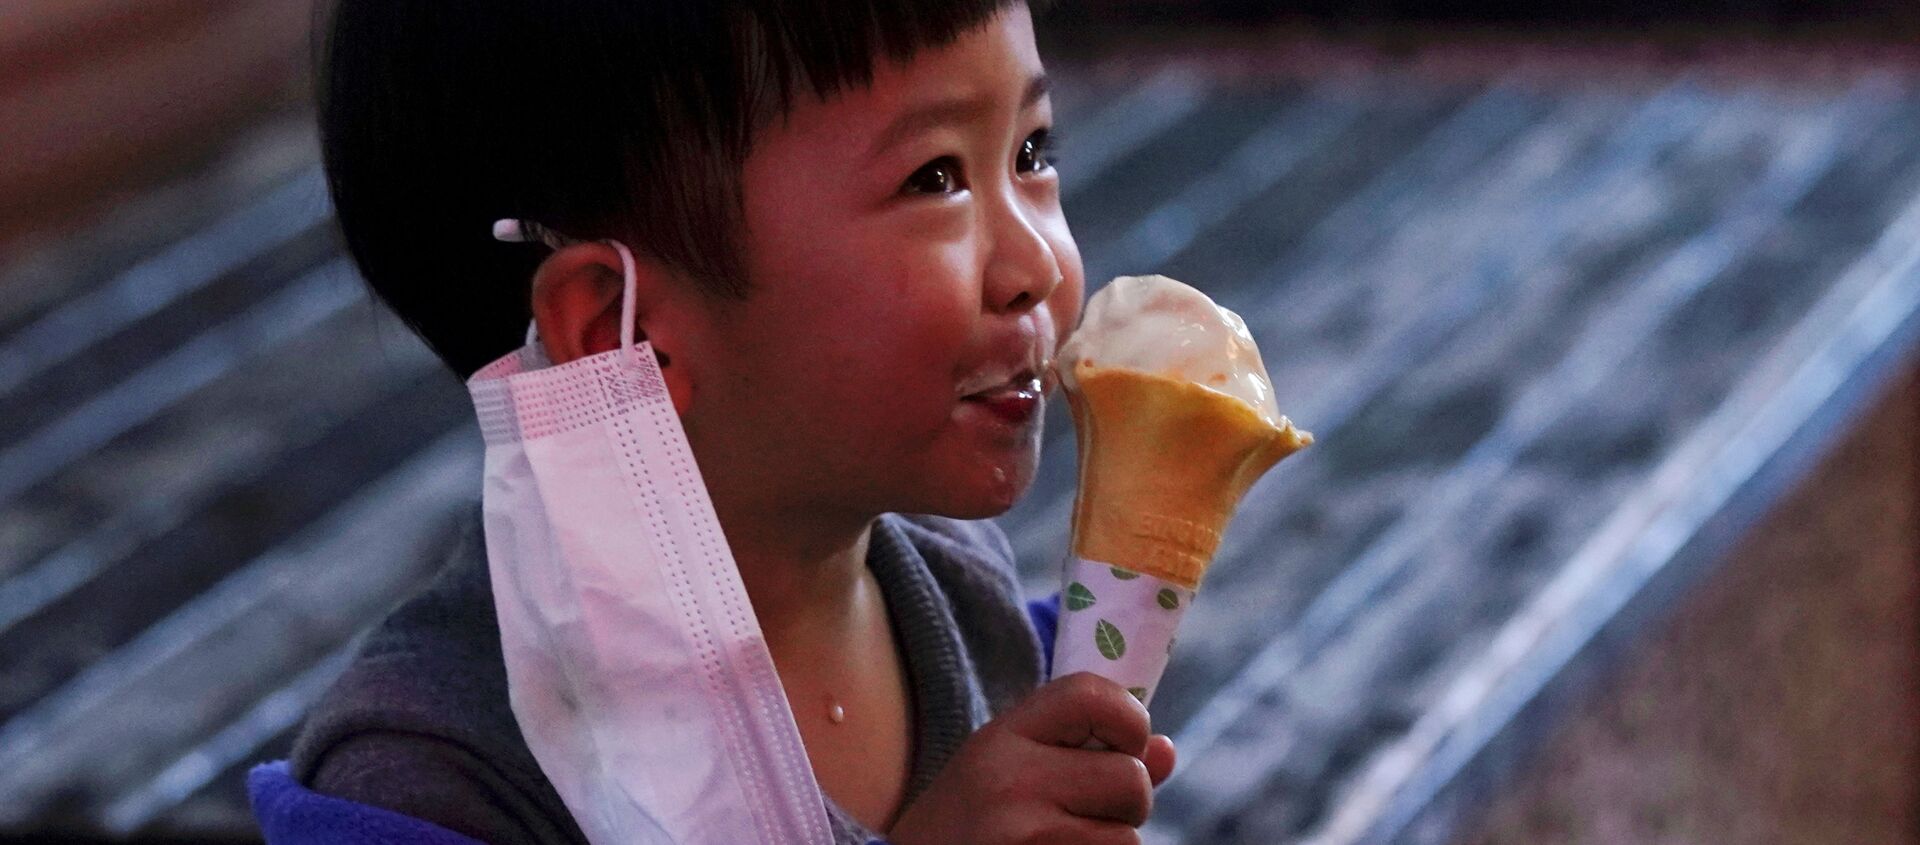 Đứa trẻ đang ăn kem. - Sputnik Việt Nam, 1920, 06.05.2020